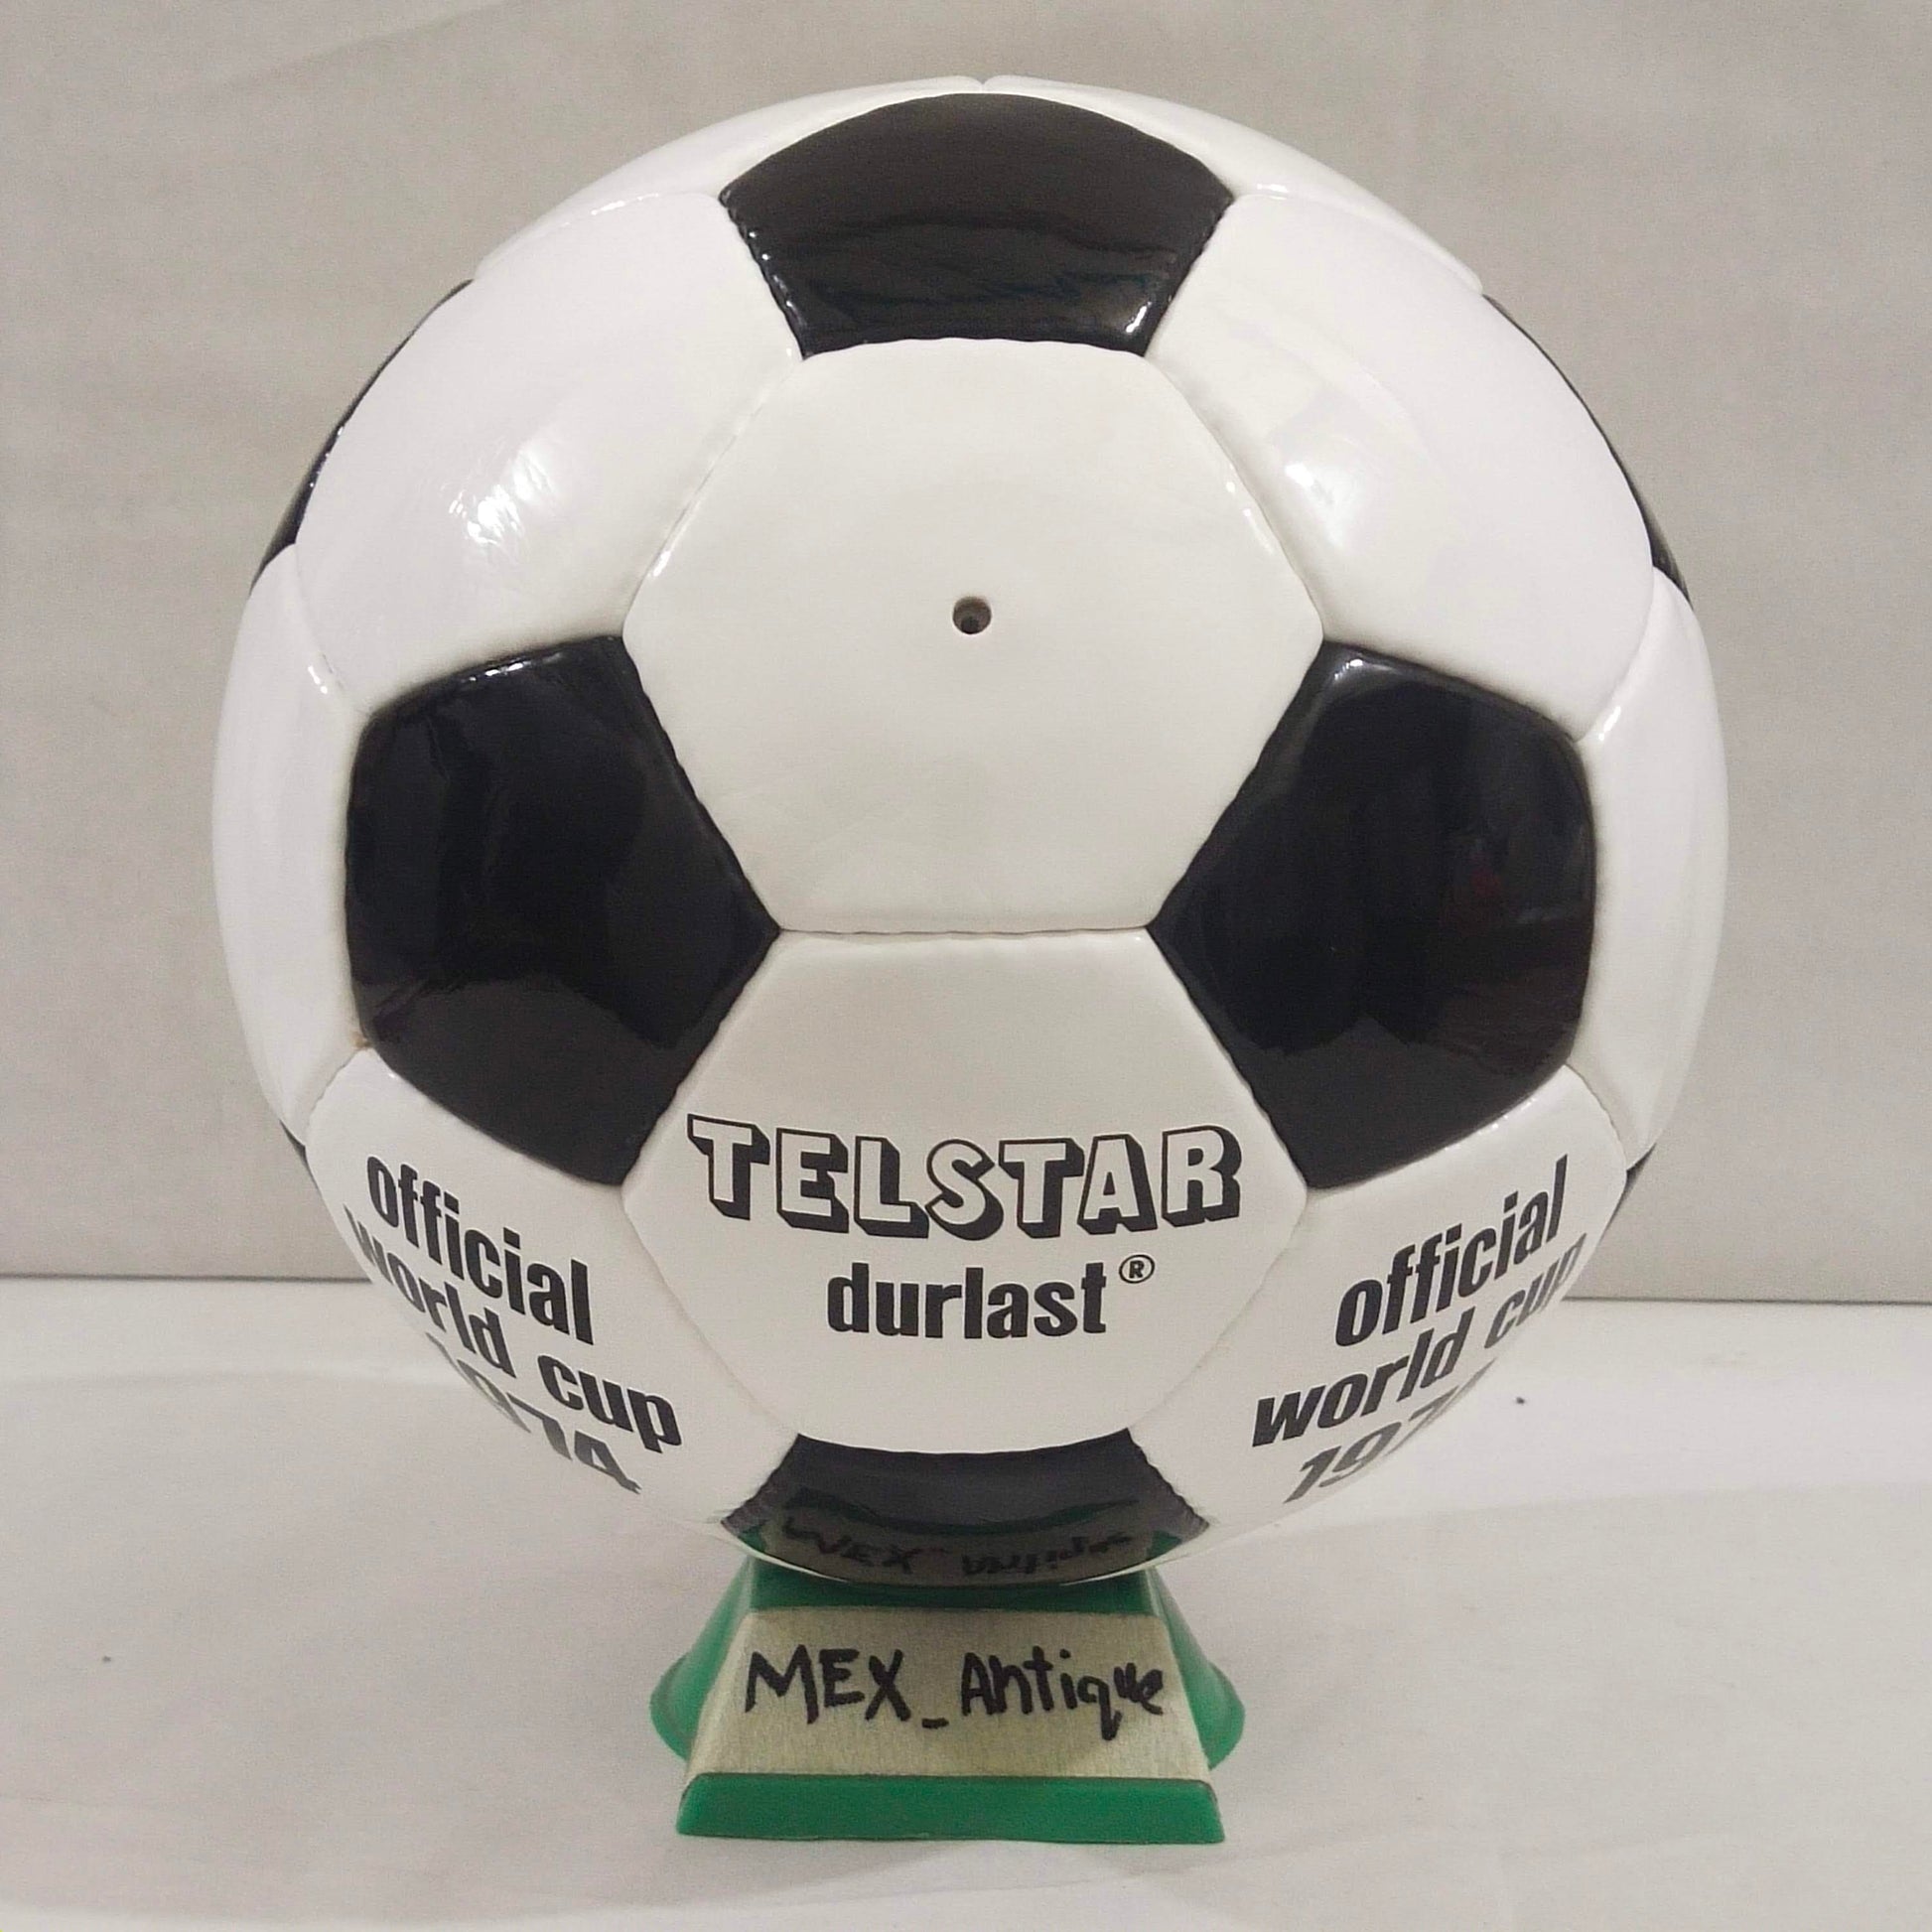 Adidas Telstar Durlast | 1976 | UEFA Europa League | Official Match Ball | Size 5 02